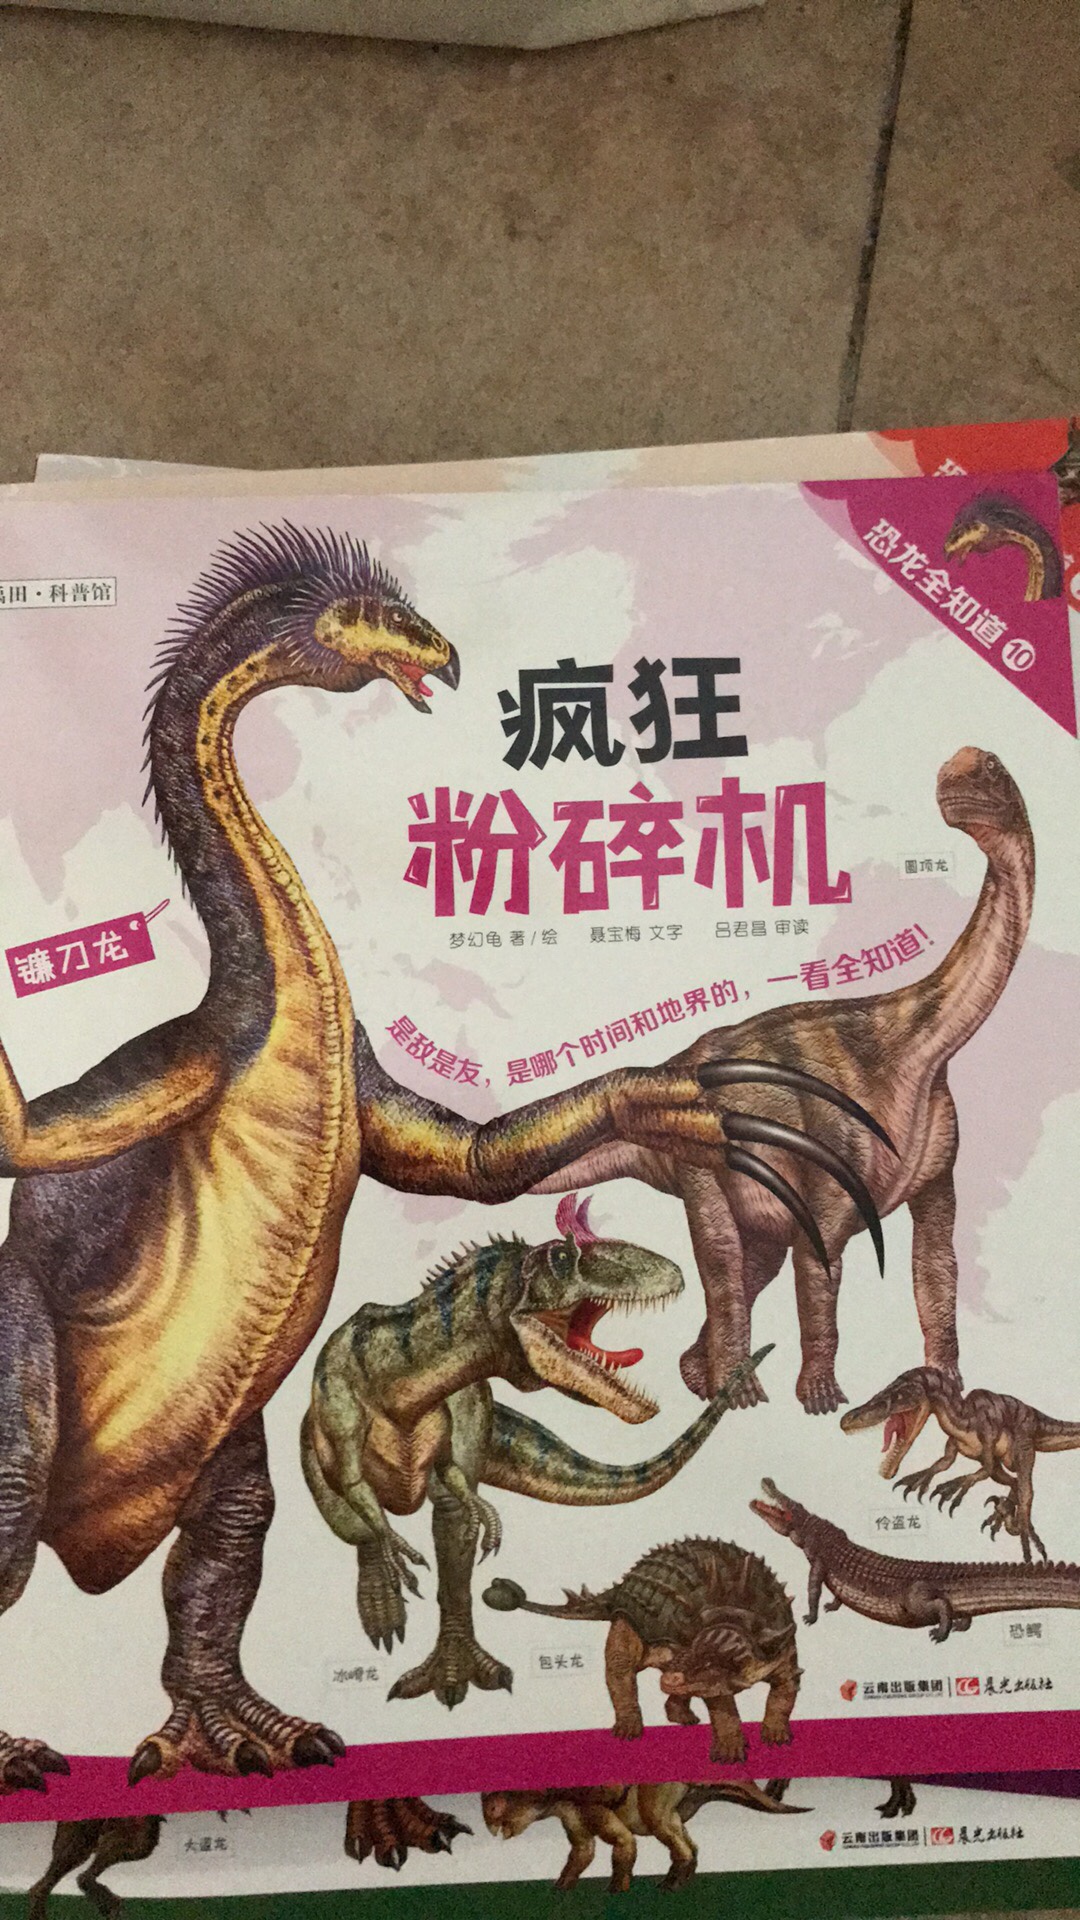 恐龙书是孩子的最爱，这套书质量不错。